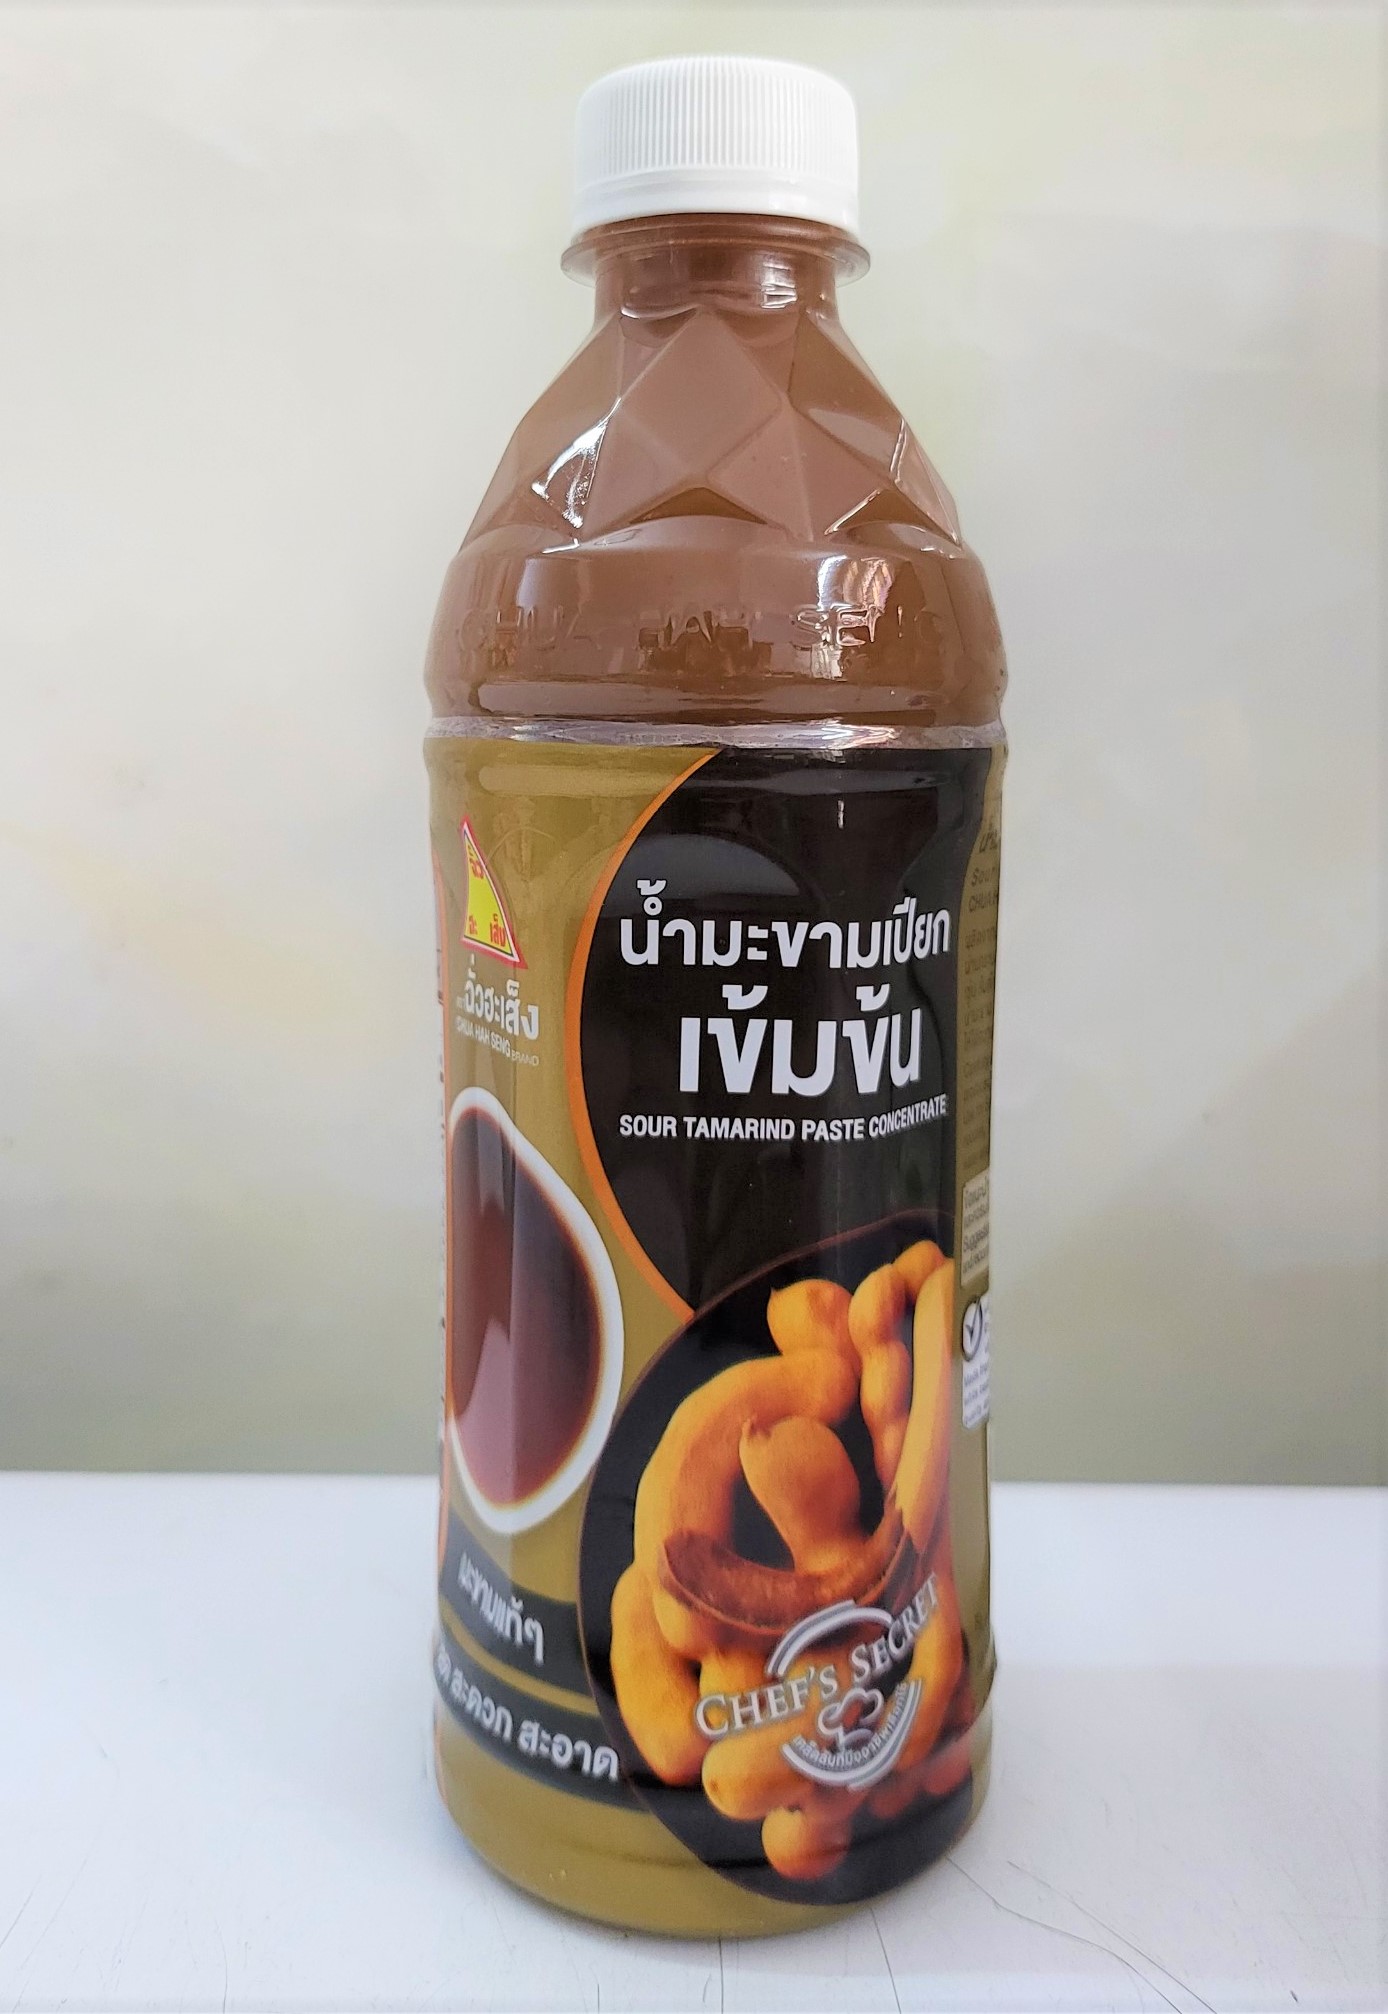 [Chai 380g] XỐT ME CÔ ĐẶC [Thailand] CHUA HAH SENG Sour Tamarind Paste Concentrate (halal)